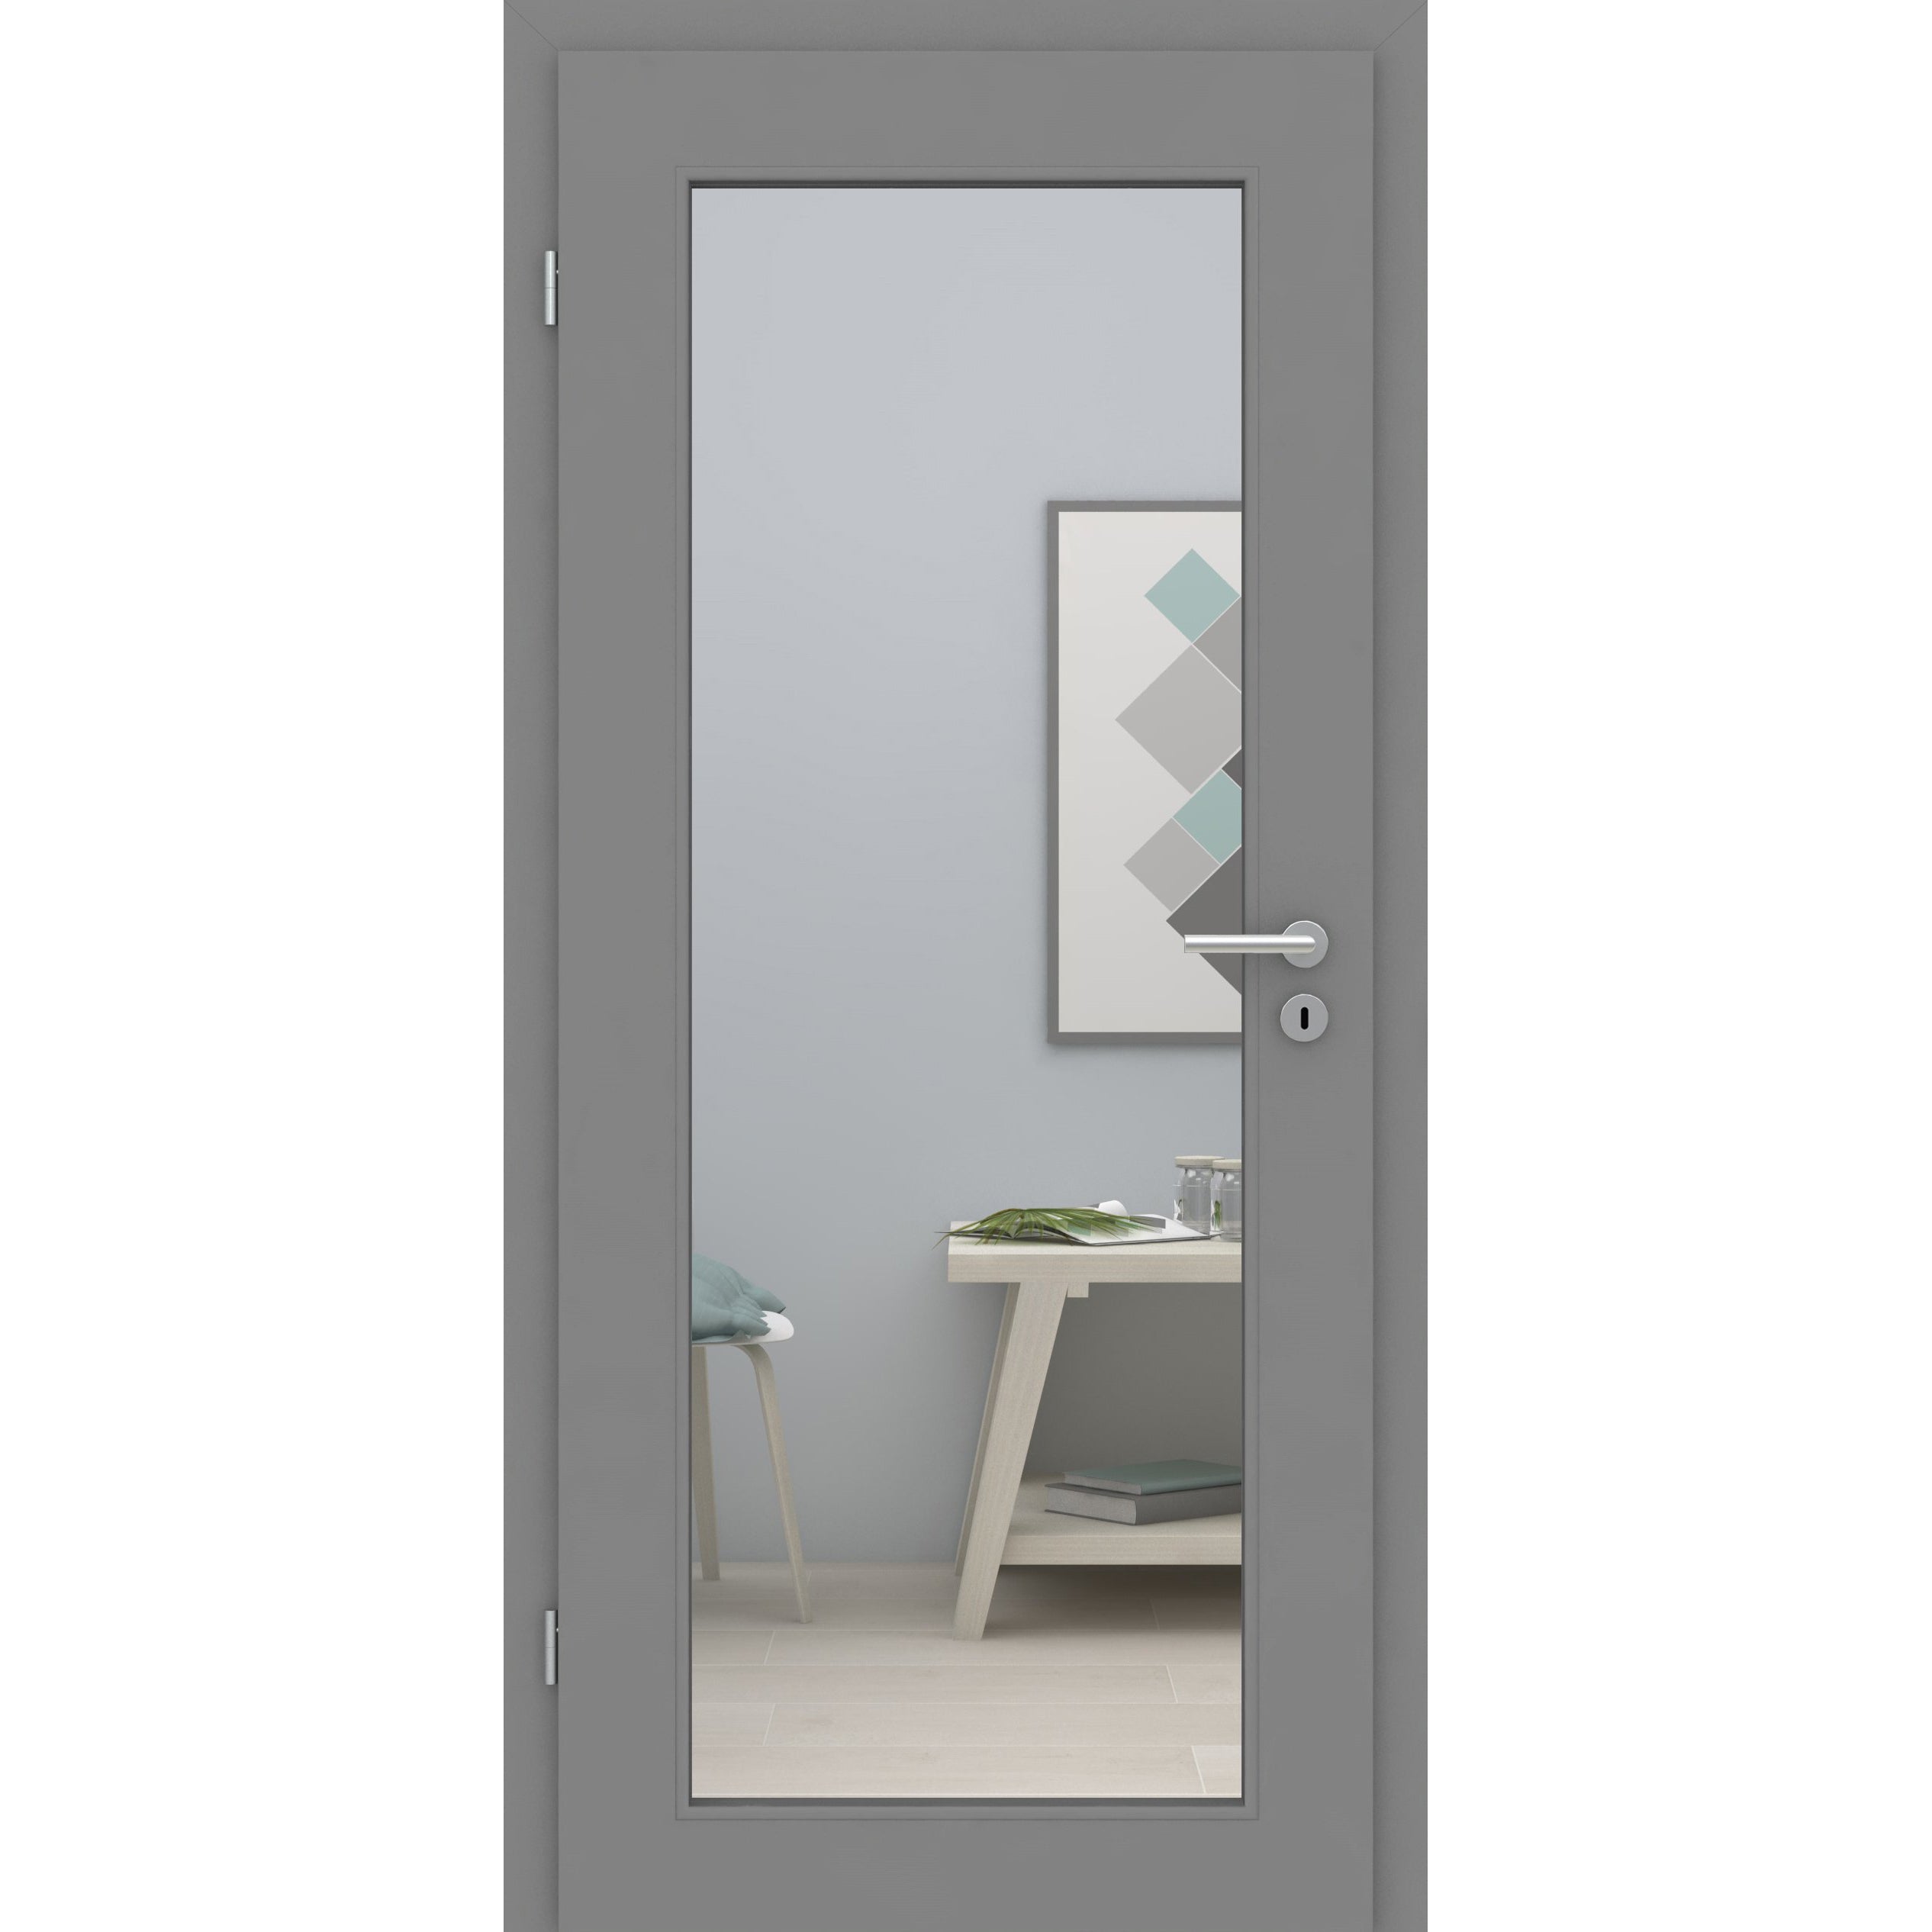 Zimmertür mit Lichtausschnitt XL grau glatt Designkante - Modell LAXL